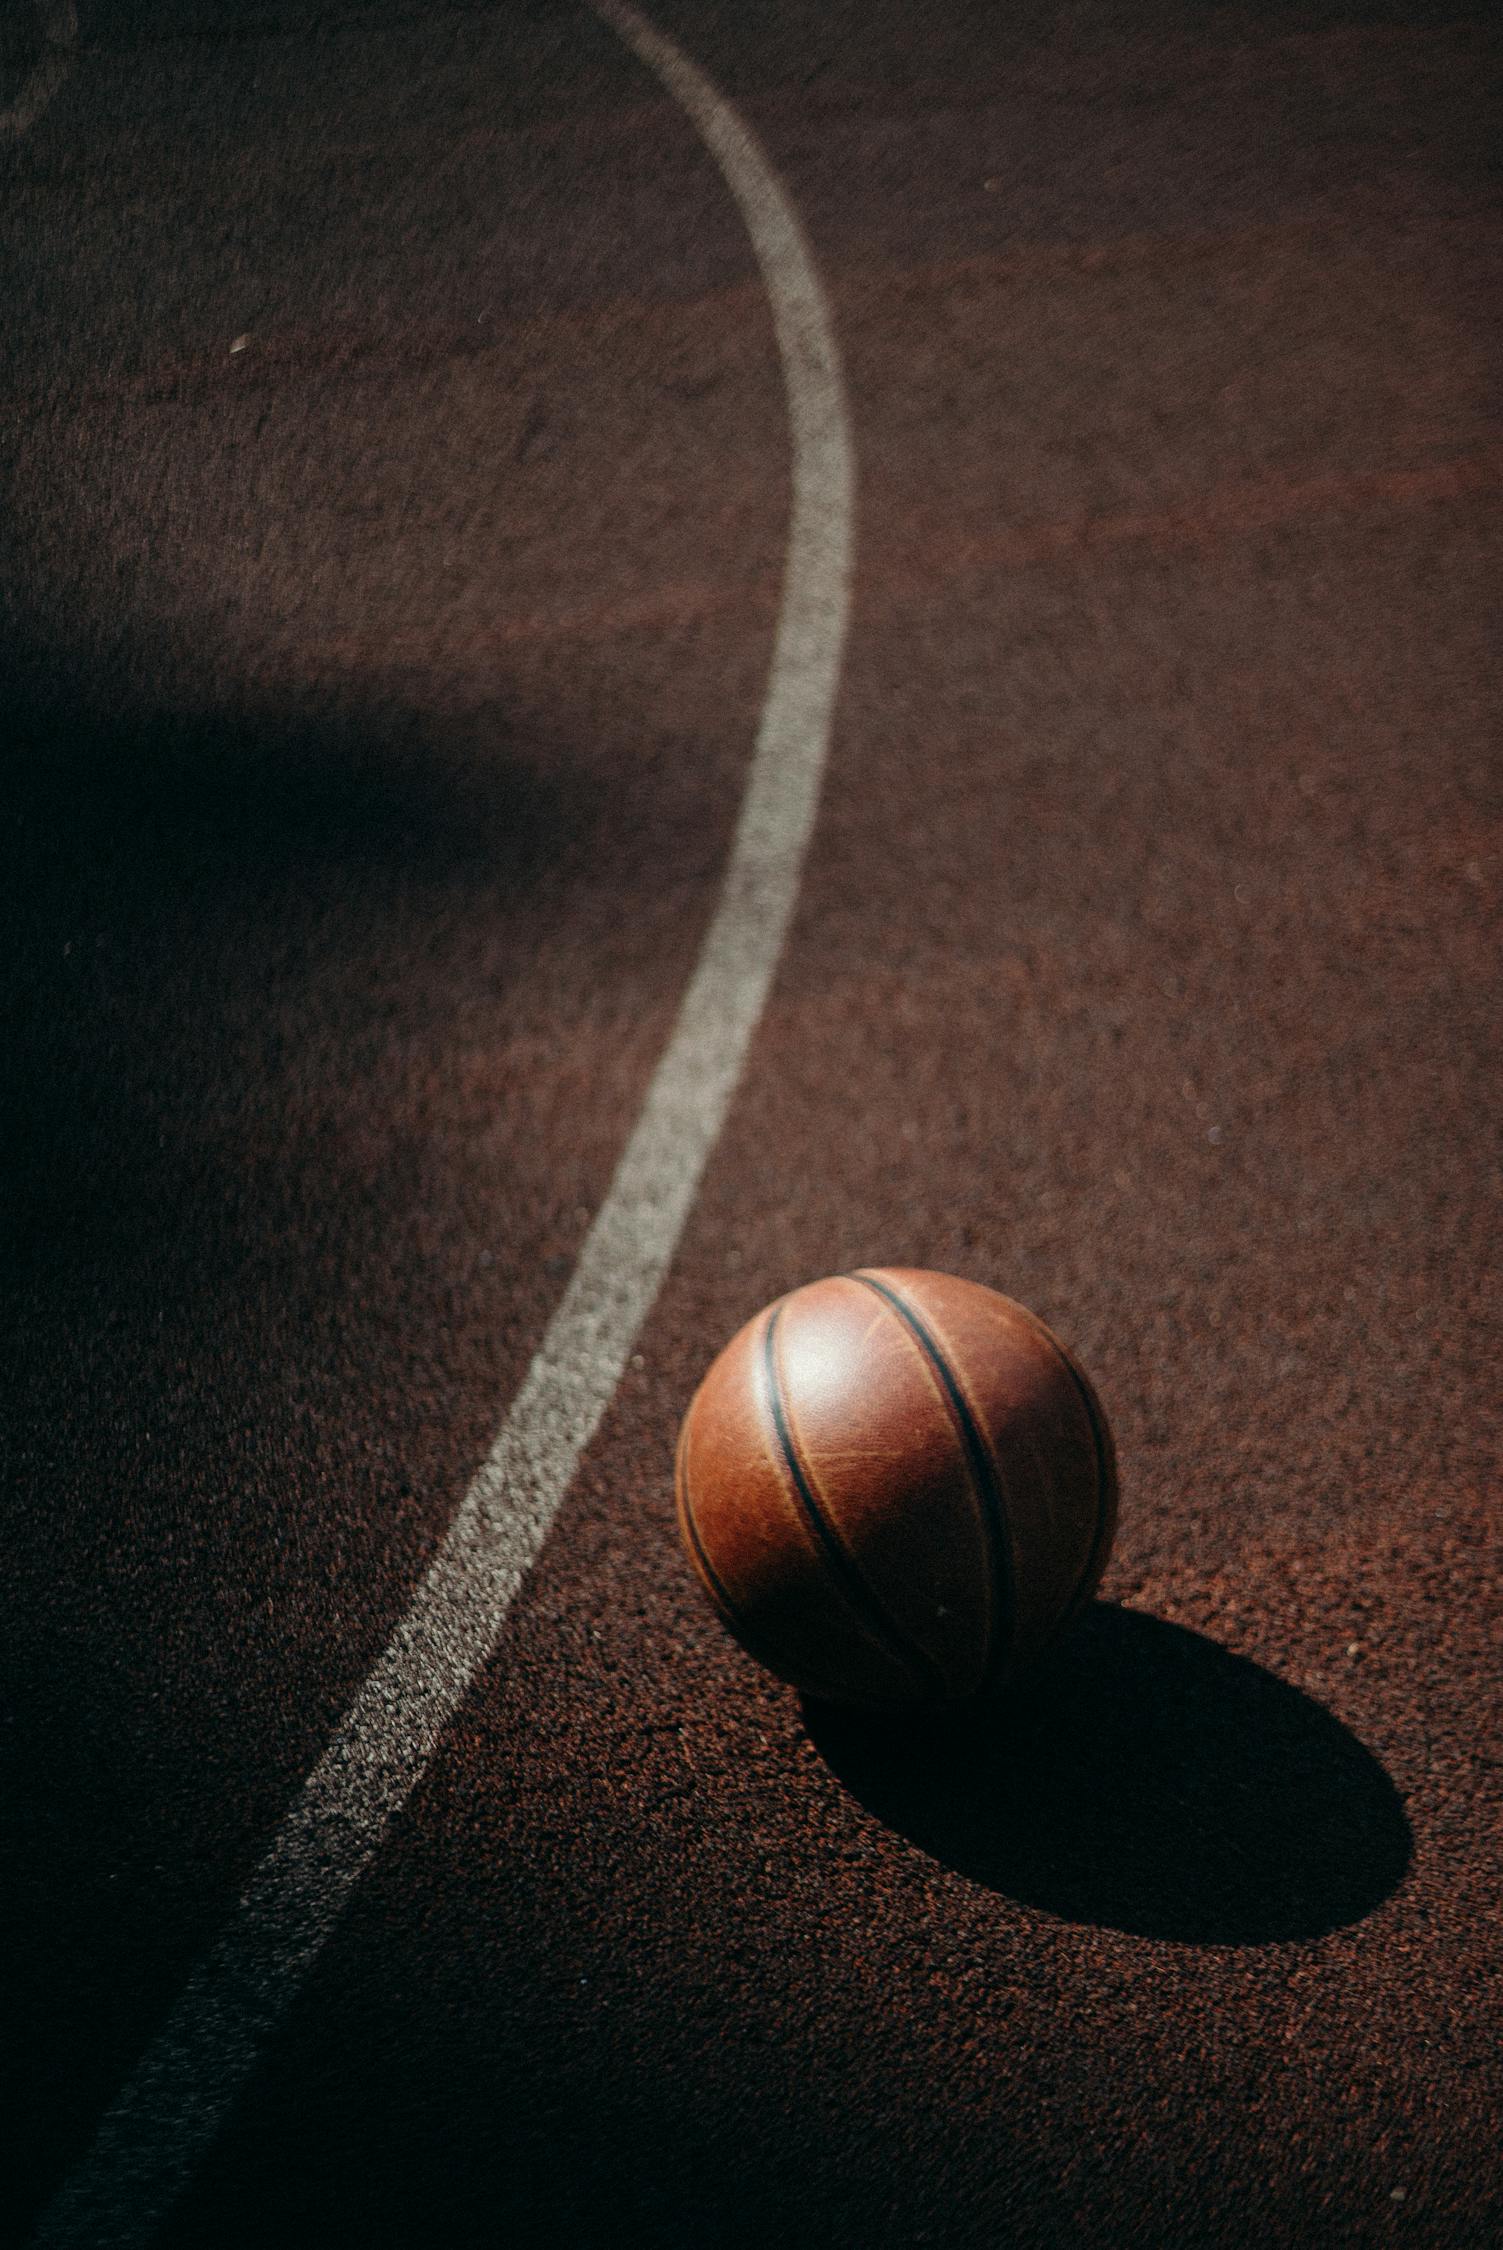 Brown Basketball on Basketball Court · Free Stock Photo